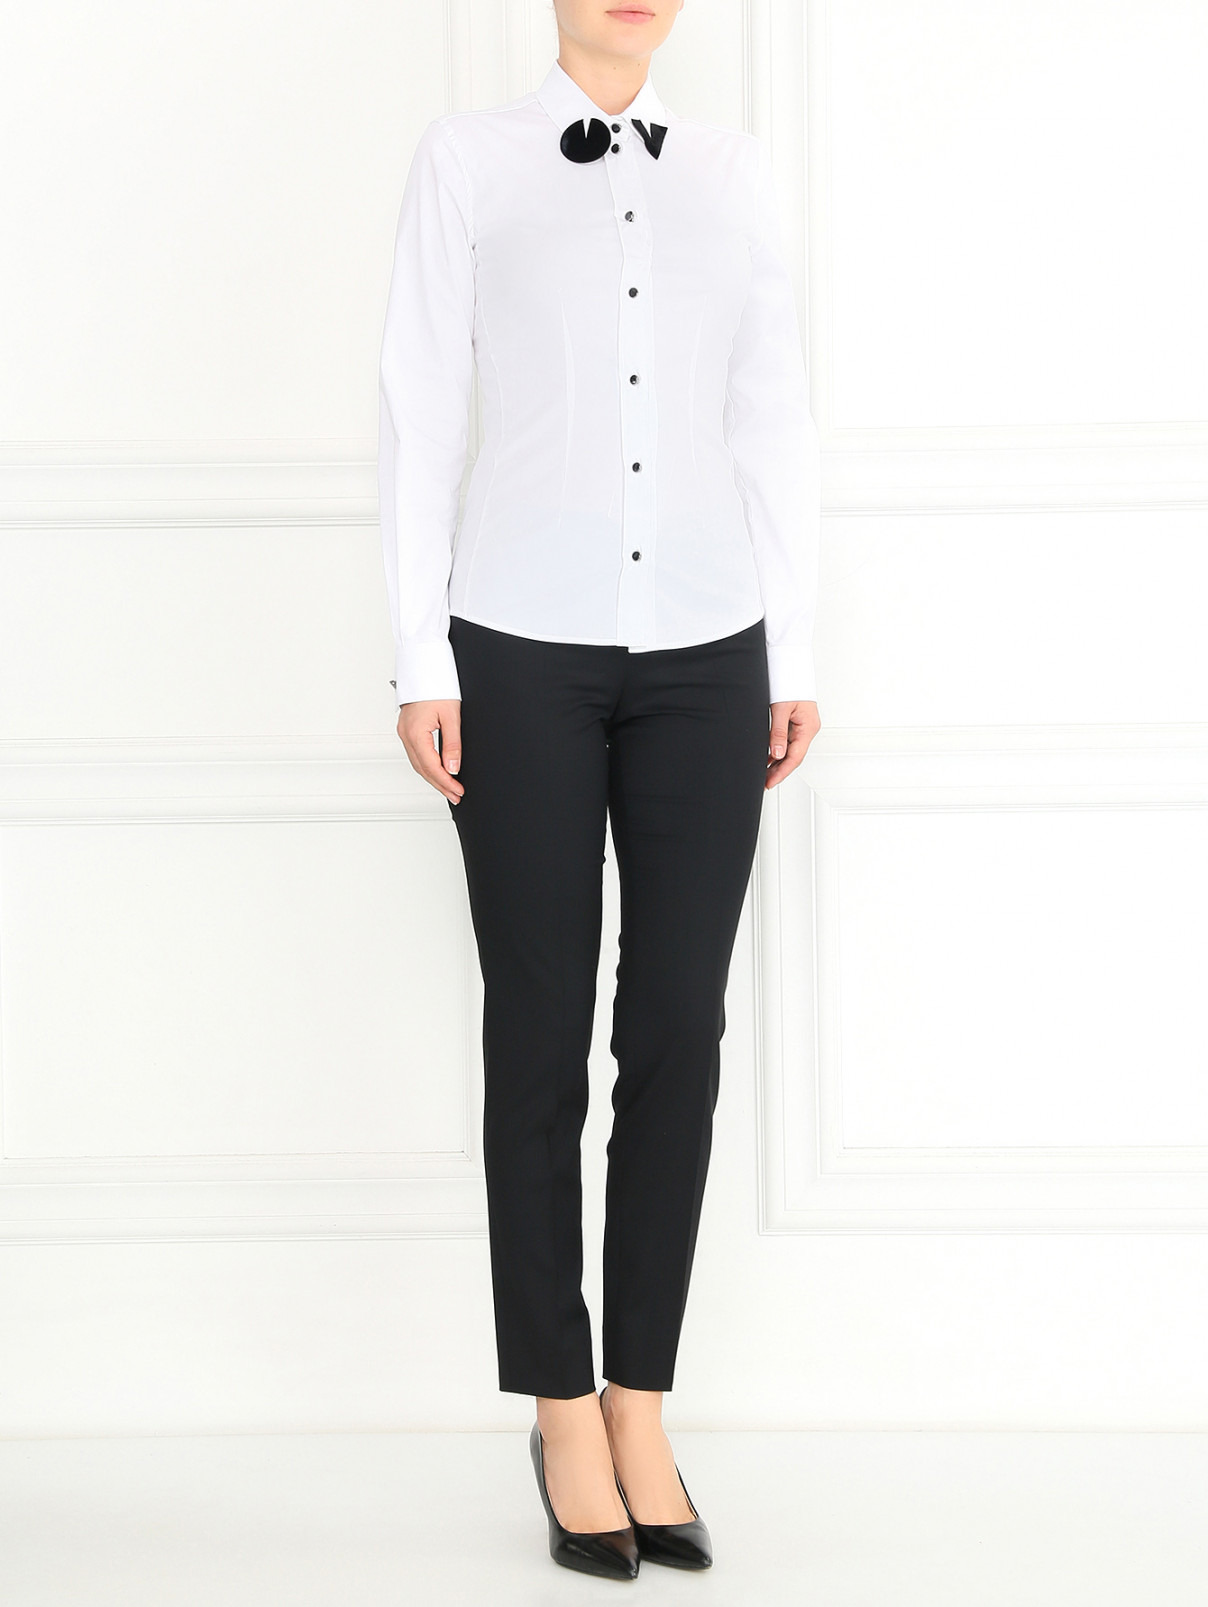 Рубашка из хлопка с аппликацией Emporio Armani  –  Модель Общий вид  – Цвет:  Белый